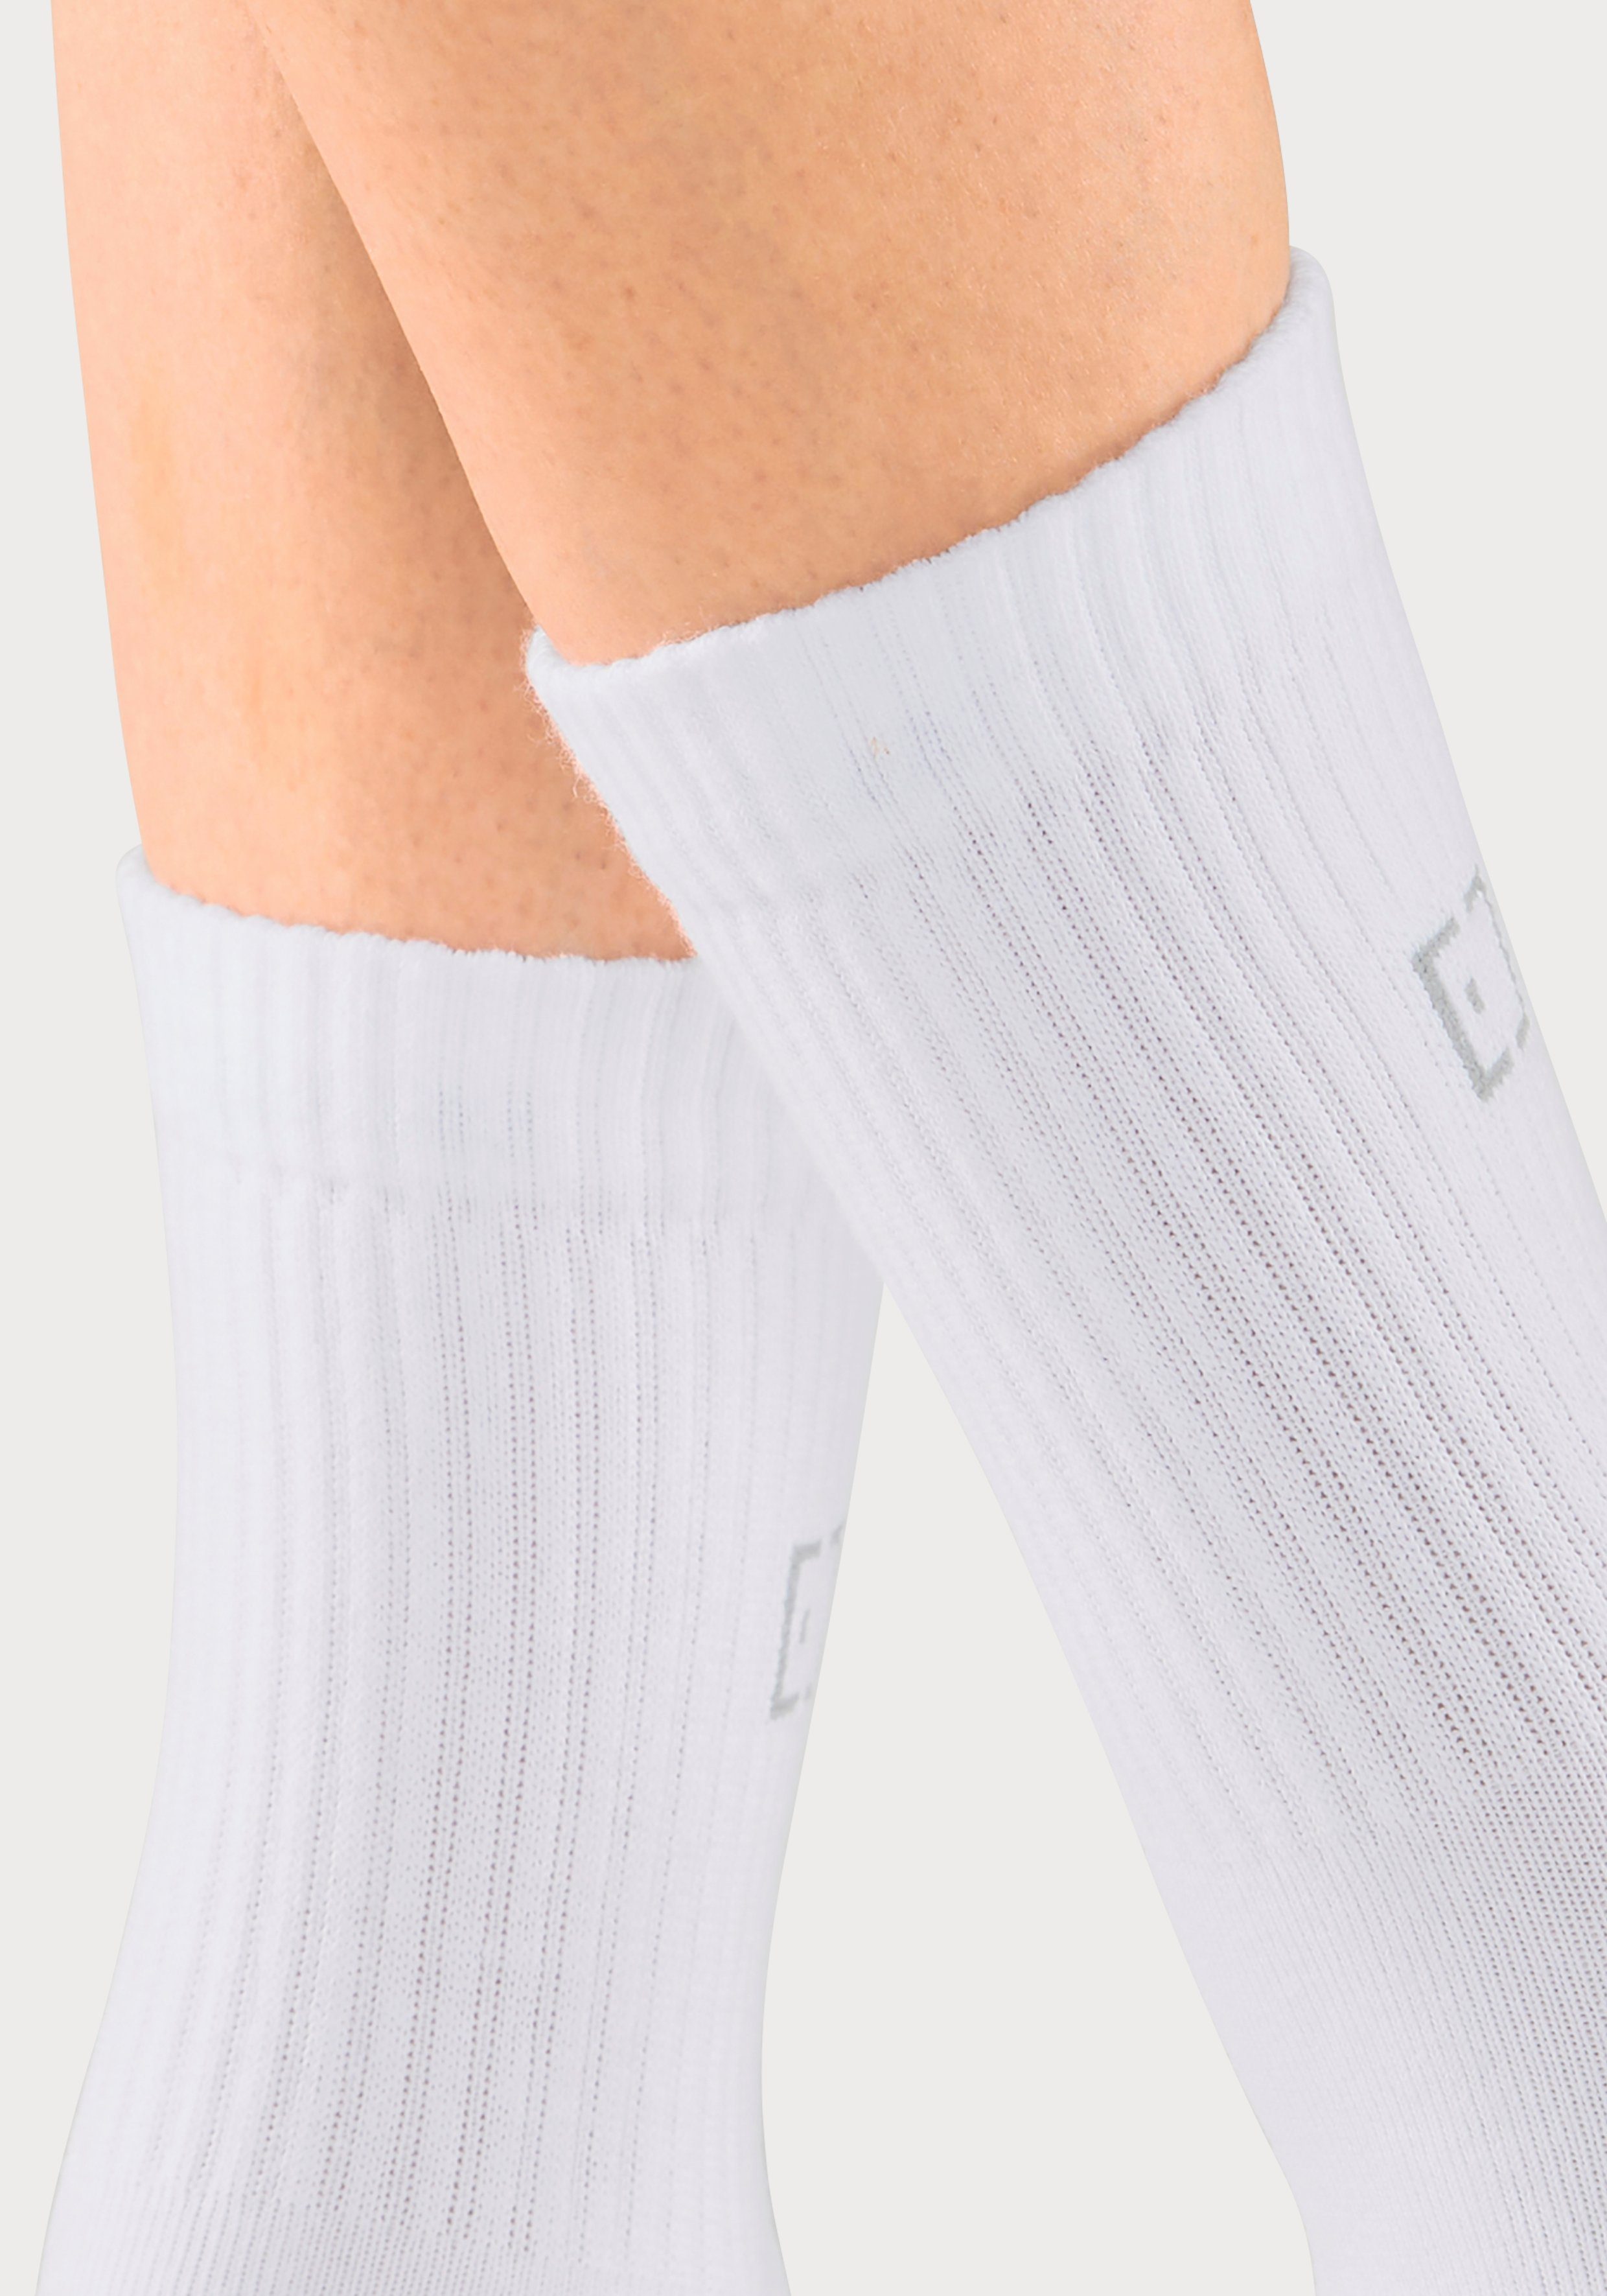 Elbsand Socken 3x und weiß Schriftzug Markenlogo (3-Paar) mit eingestricktem